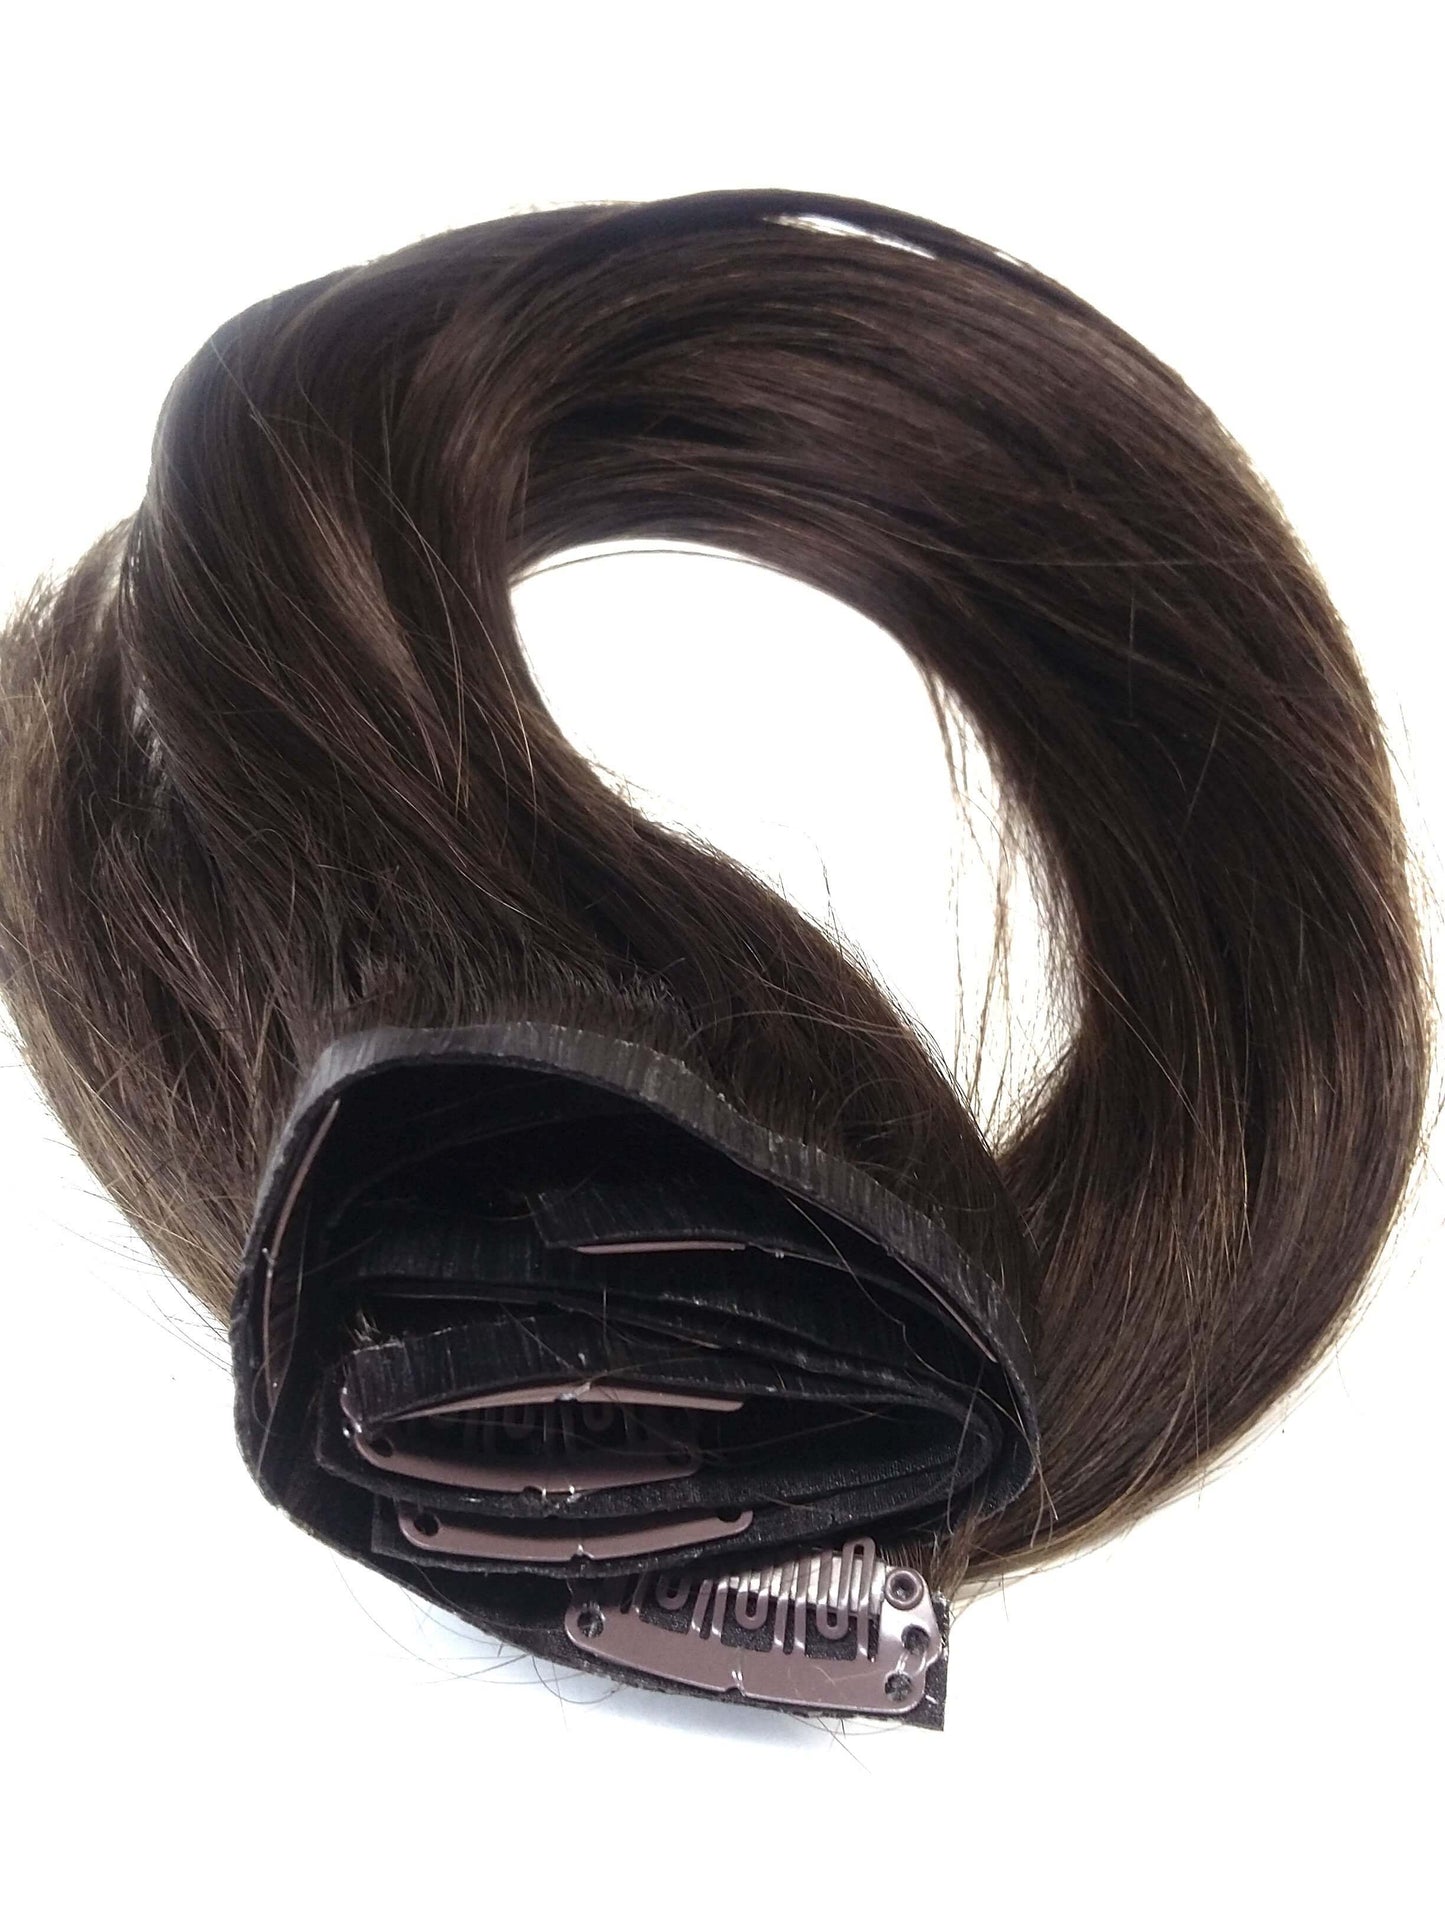 شعر بشري ريمي برازيلي بكر - وصلات بمشبك من البولي يوريثان، 20 بوصة، مفرود، لون 2، 100 جرام - شحن سريع